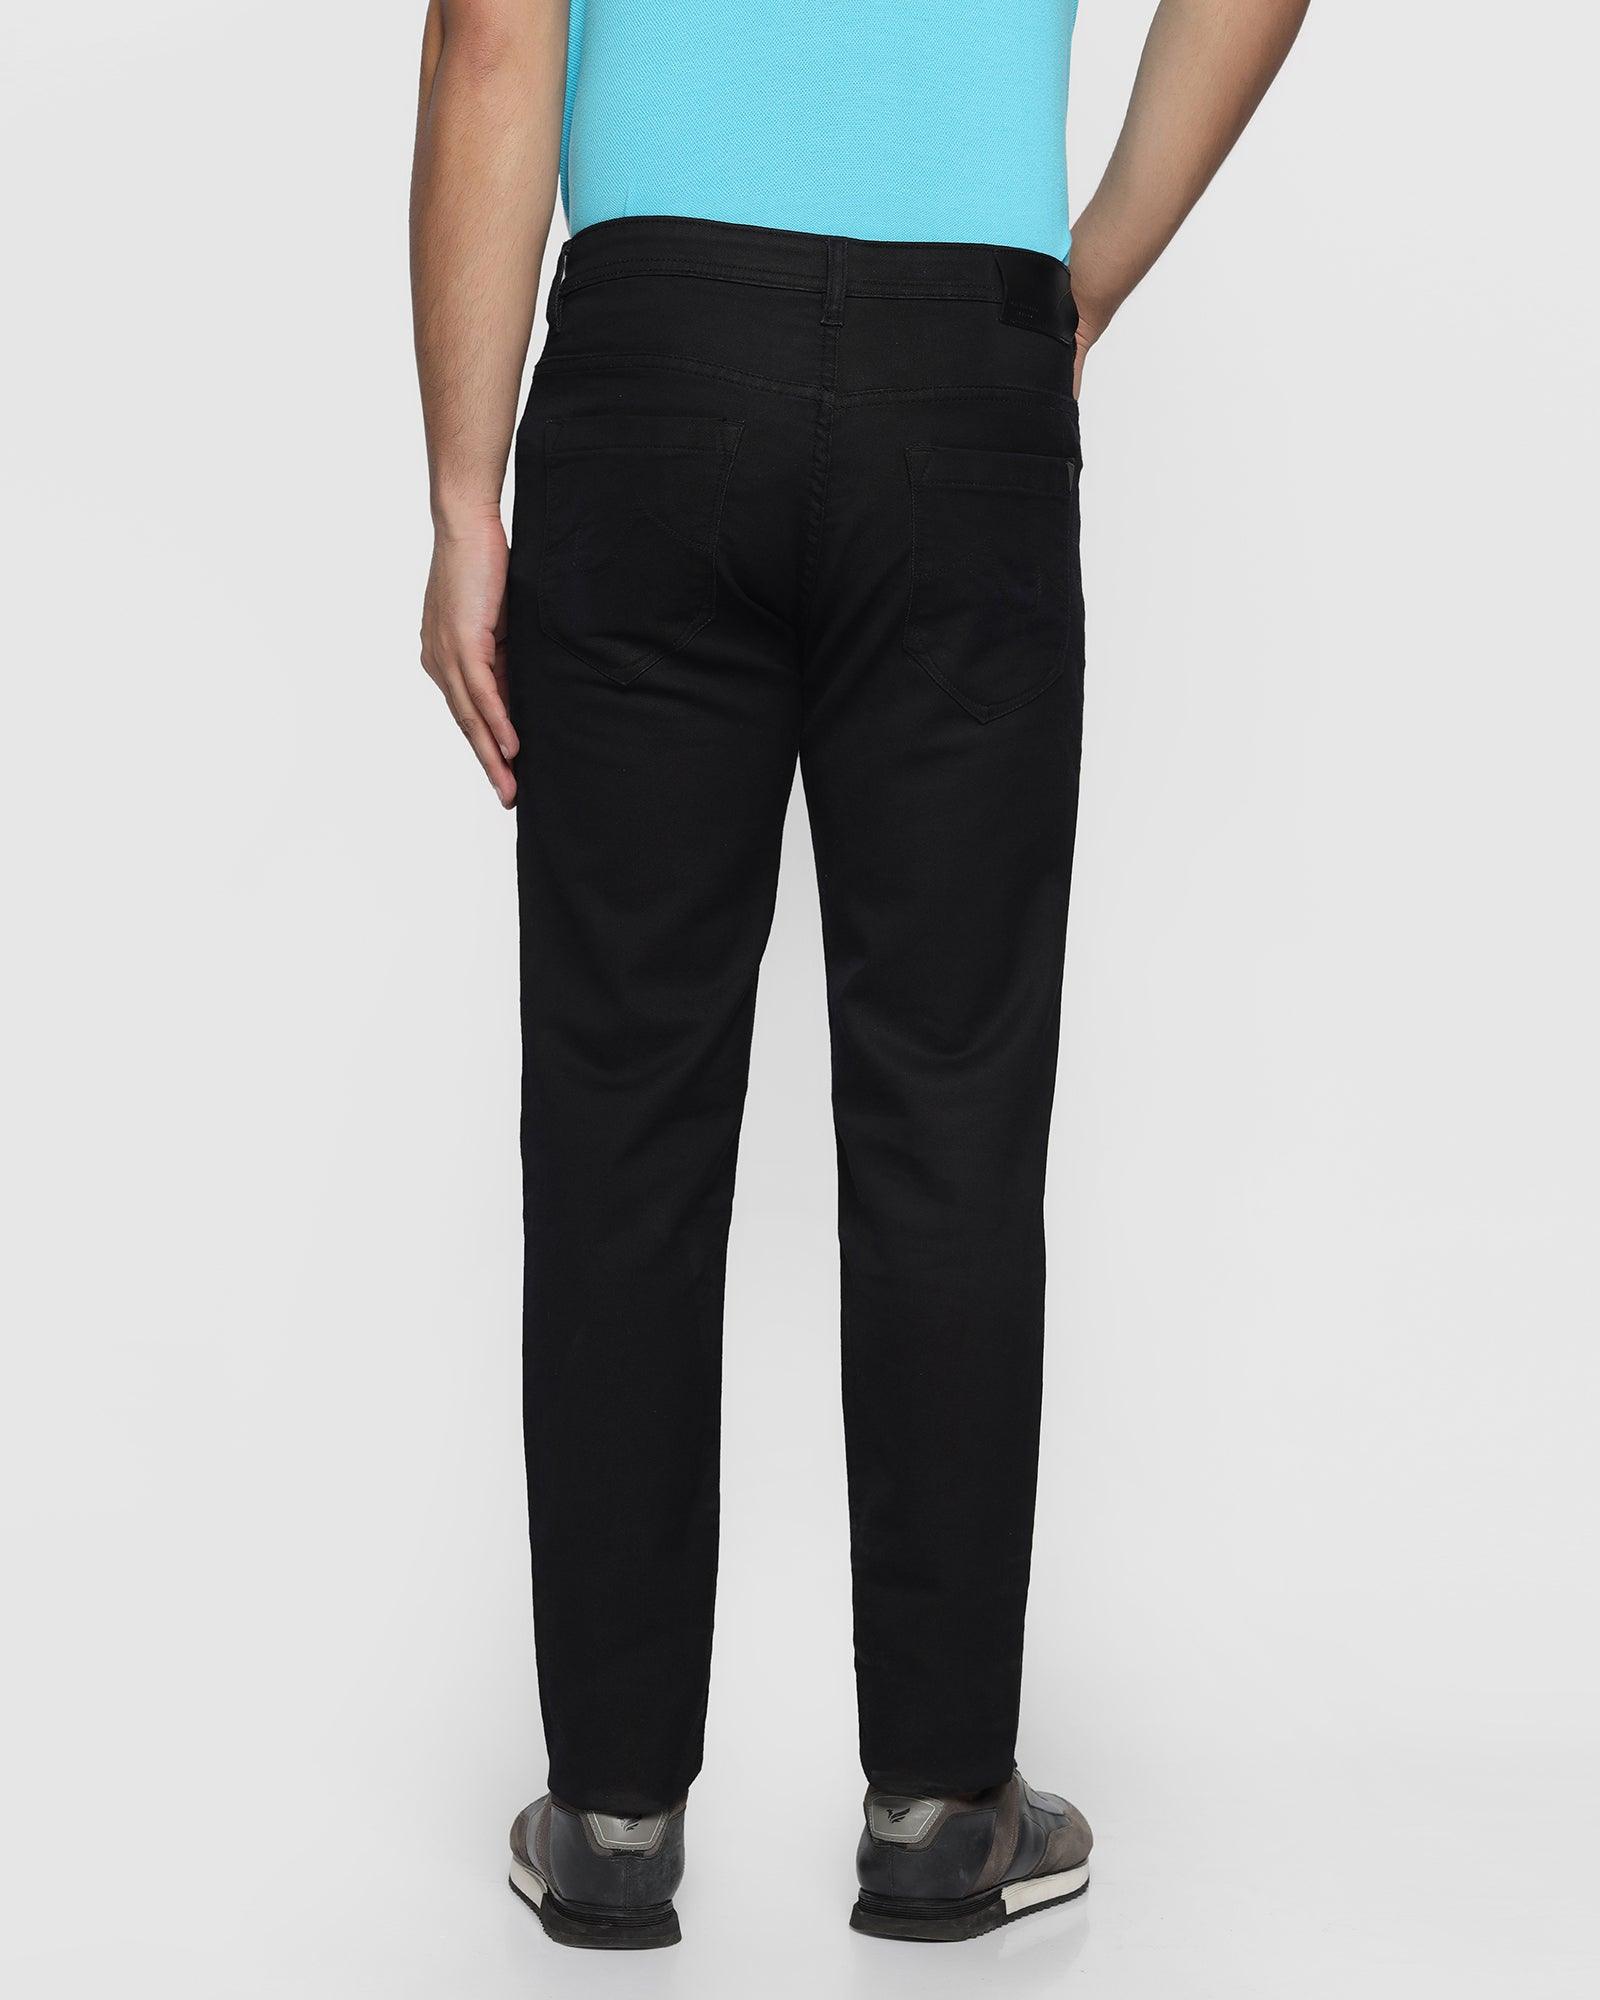 Ultrasoft Slim Comfort Buff Fit Black Jeans - Blasa